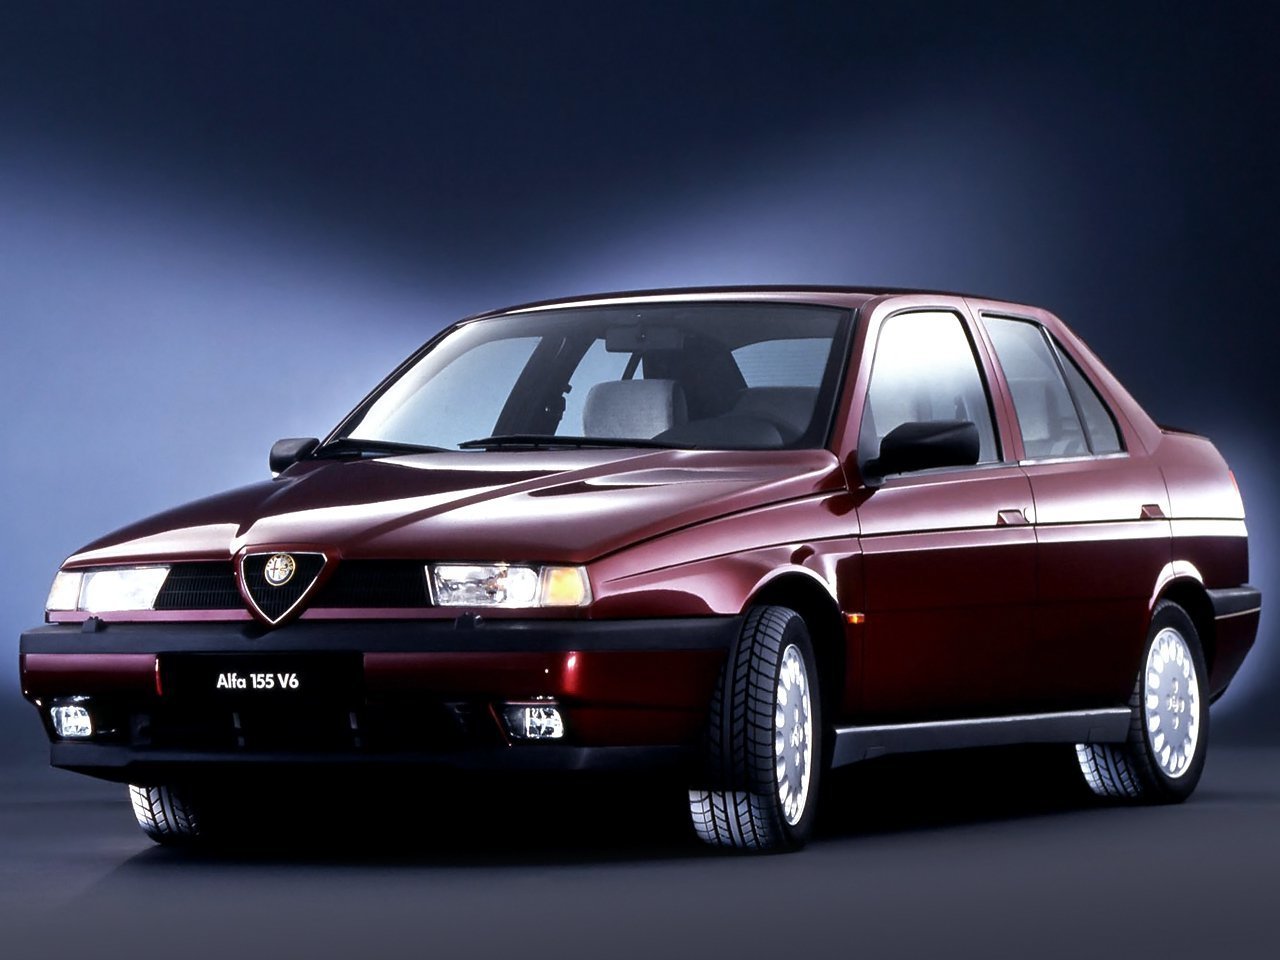 Снижаем расход Alfa Romeo 155 на топливо, устанавливаем ГБО